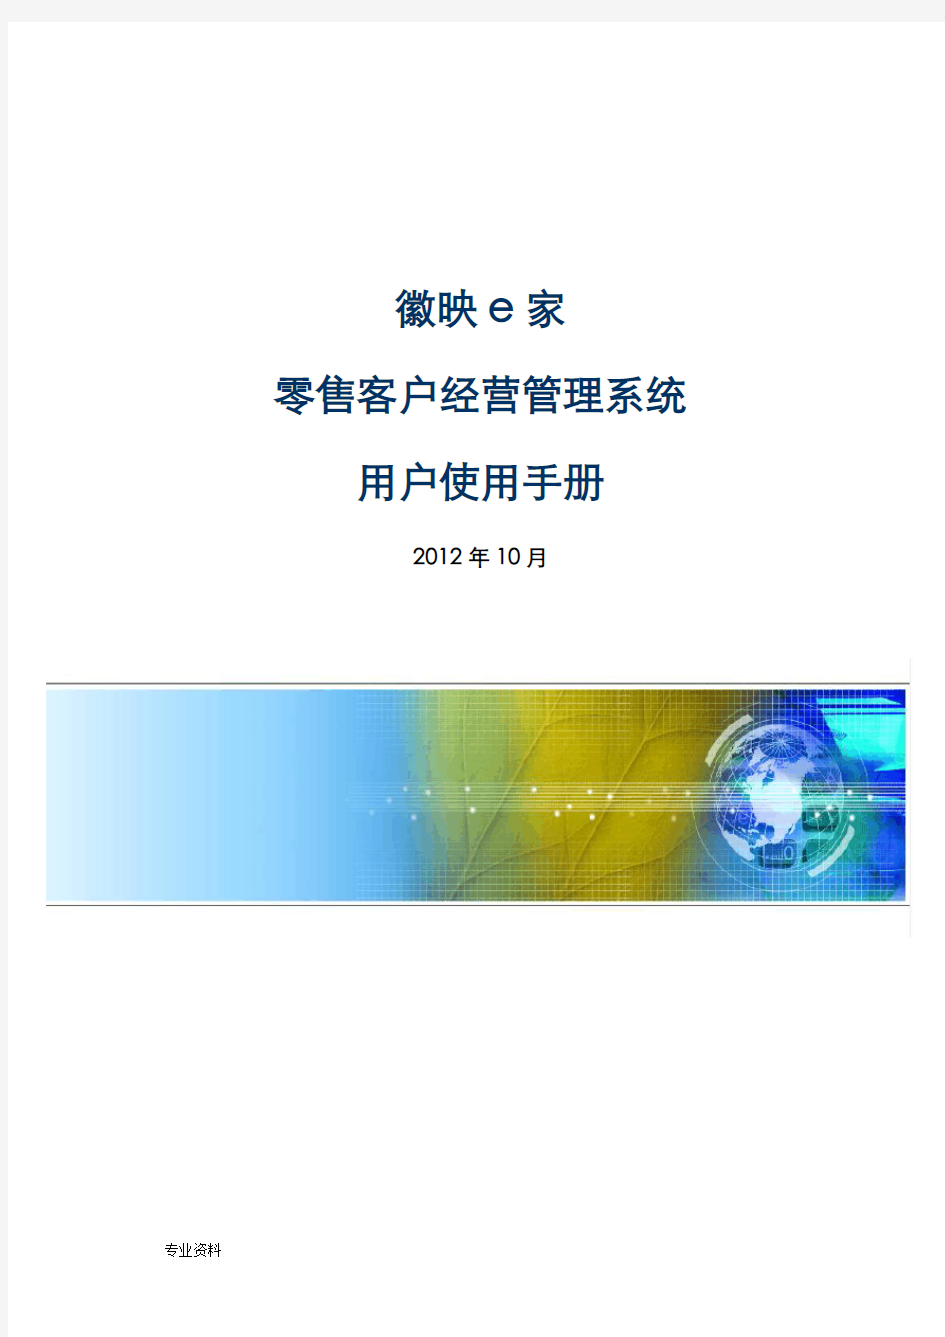 徽映e家零售管理系统操作手册(详细版)